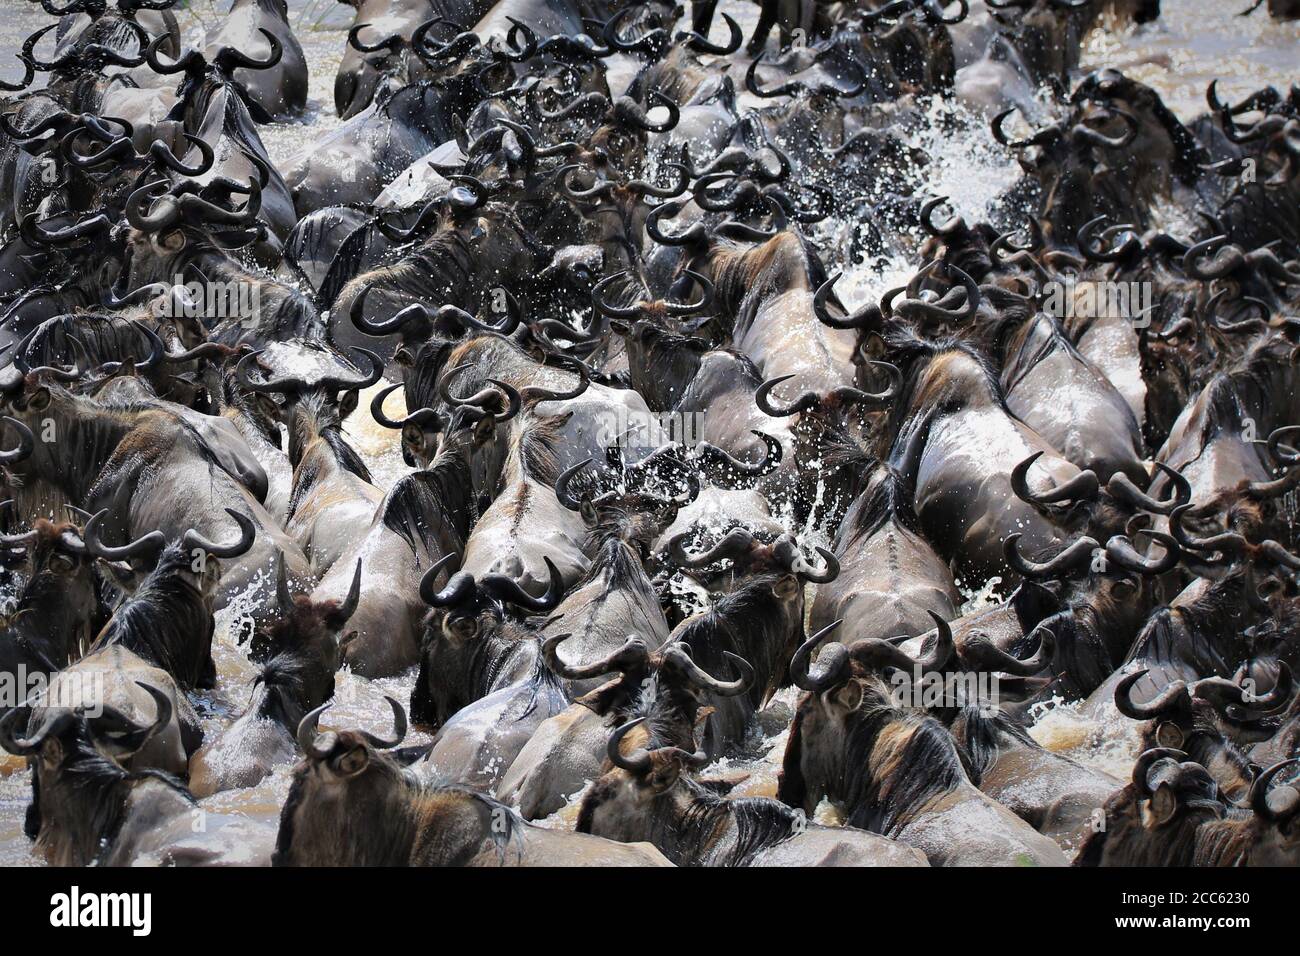 Wildebeest migration Stock Photo